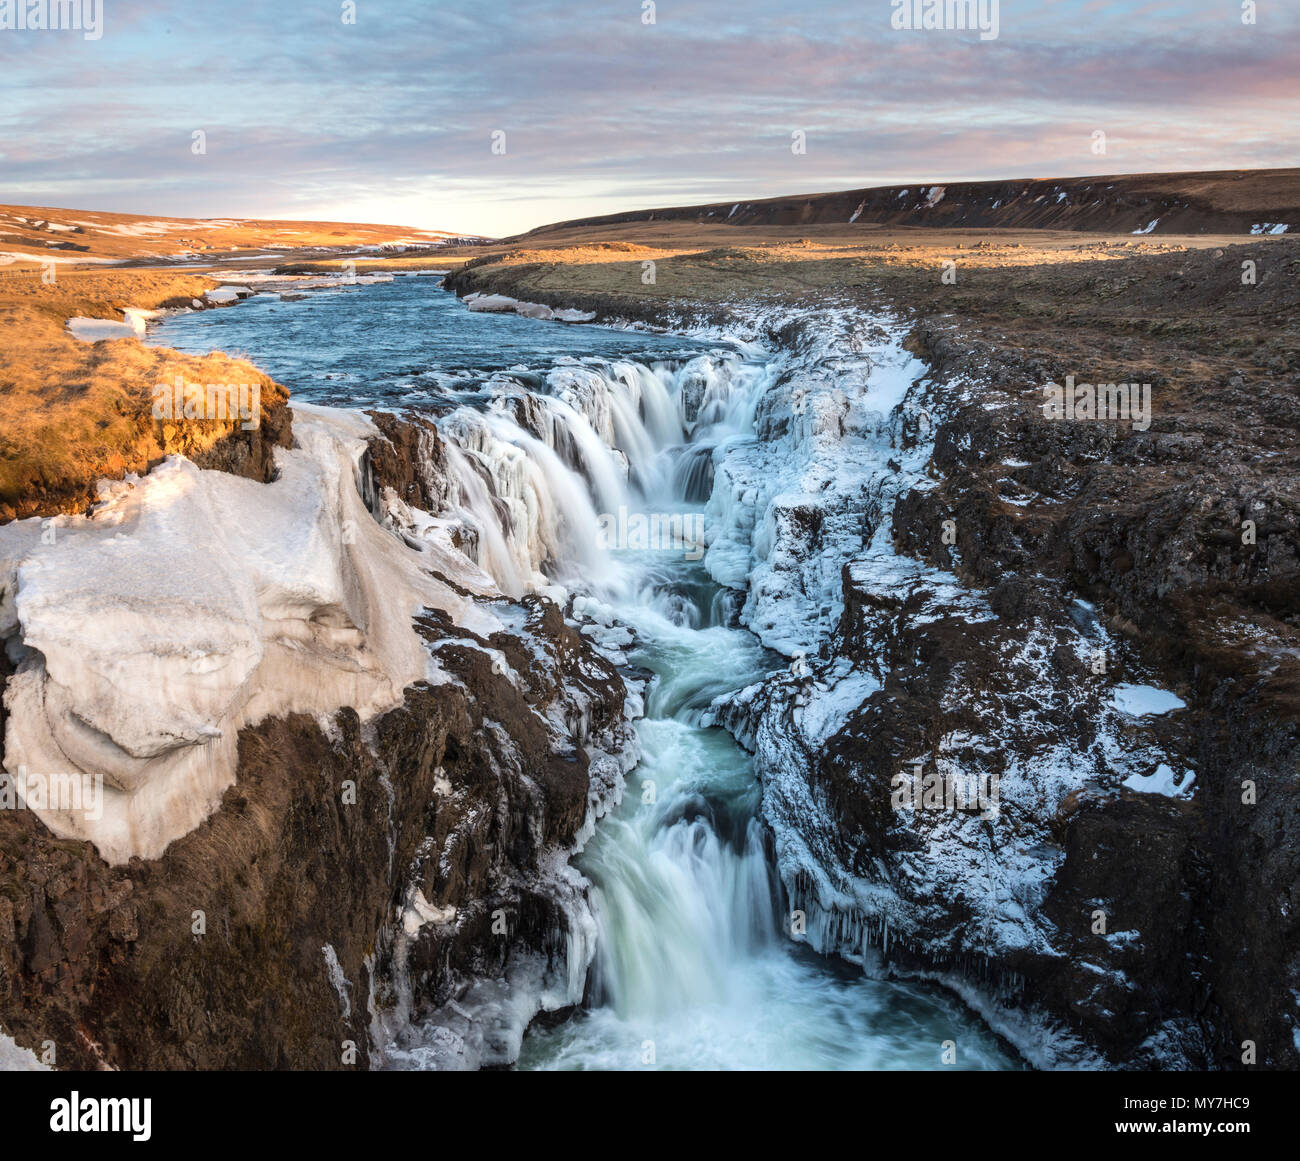 Wasserfall mit Eis und Schnee im Winter, Kolugljúfur, Sonnenuntergang, Norðurland djupivogur, Northern Island, Island Stockfoto